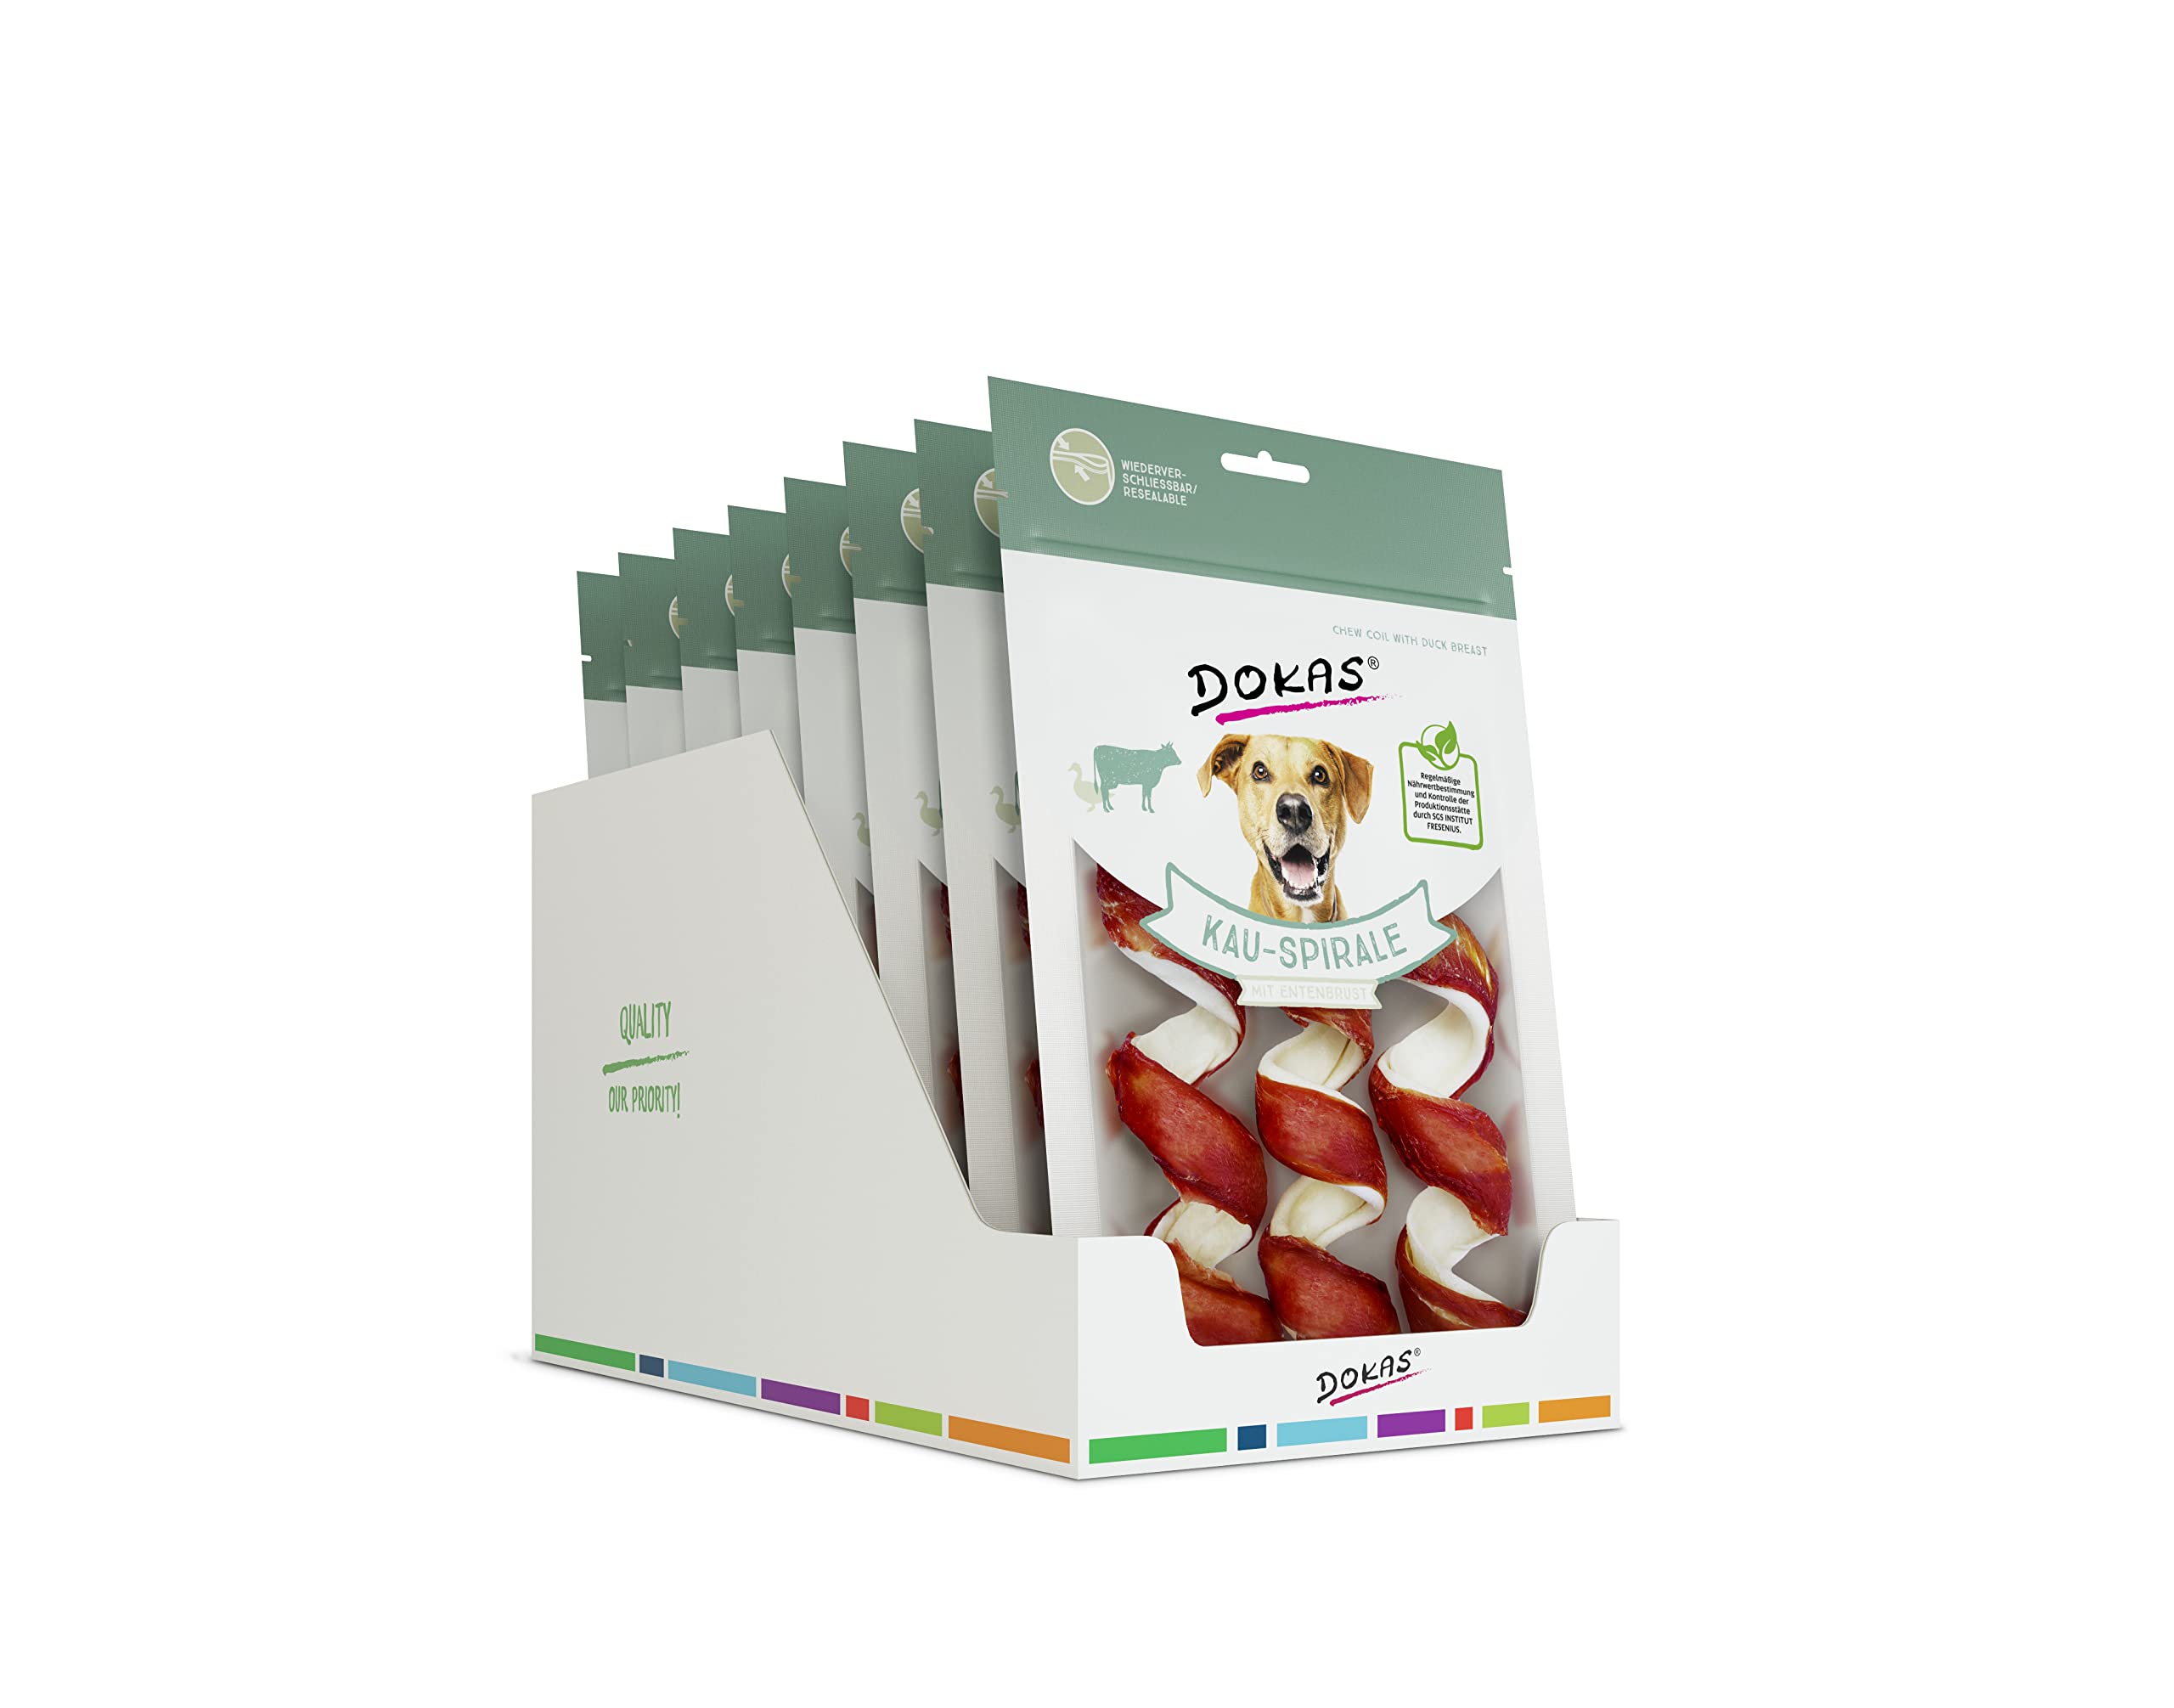 DOKAS Getreidefreier Premium Kausnack für Hunde – Ideal für zwischendurch (8 x 110g)